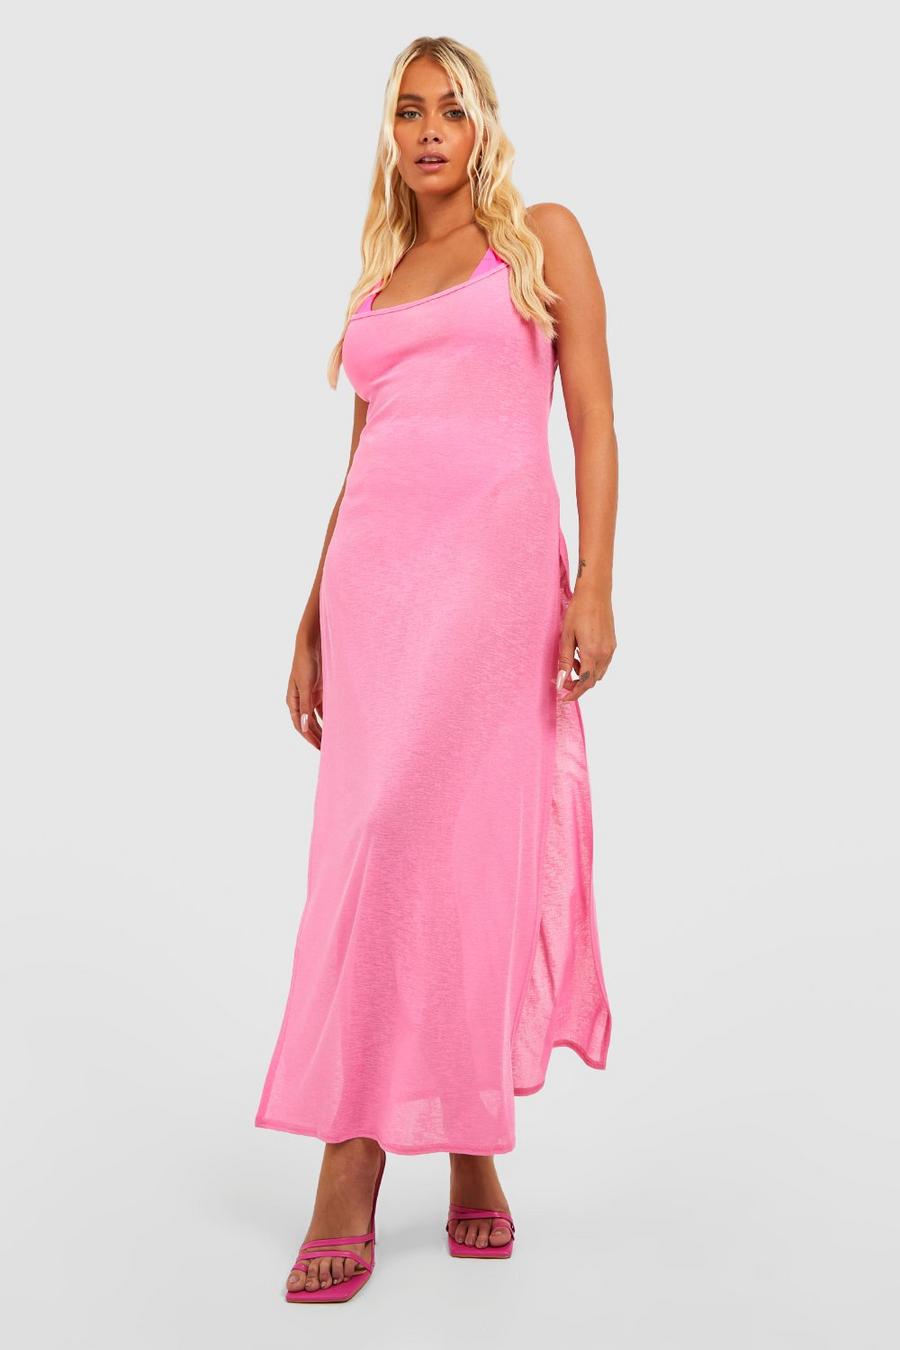 ורוד לוהט rosa שמלת חוף מבד ג'רסי עם שסע, כתפיות דקות וחיתוכים שקופים